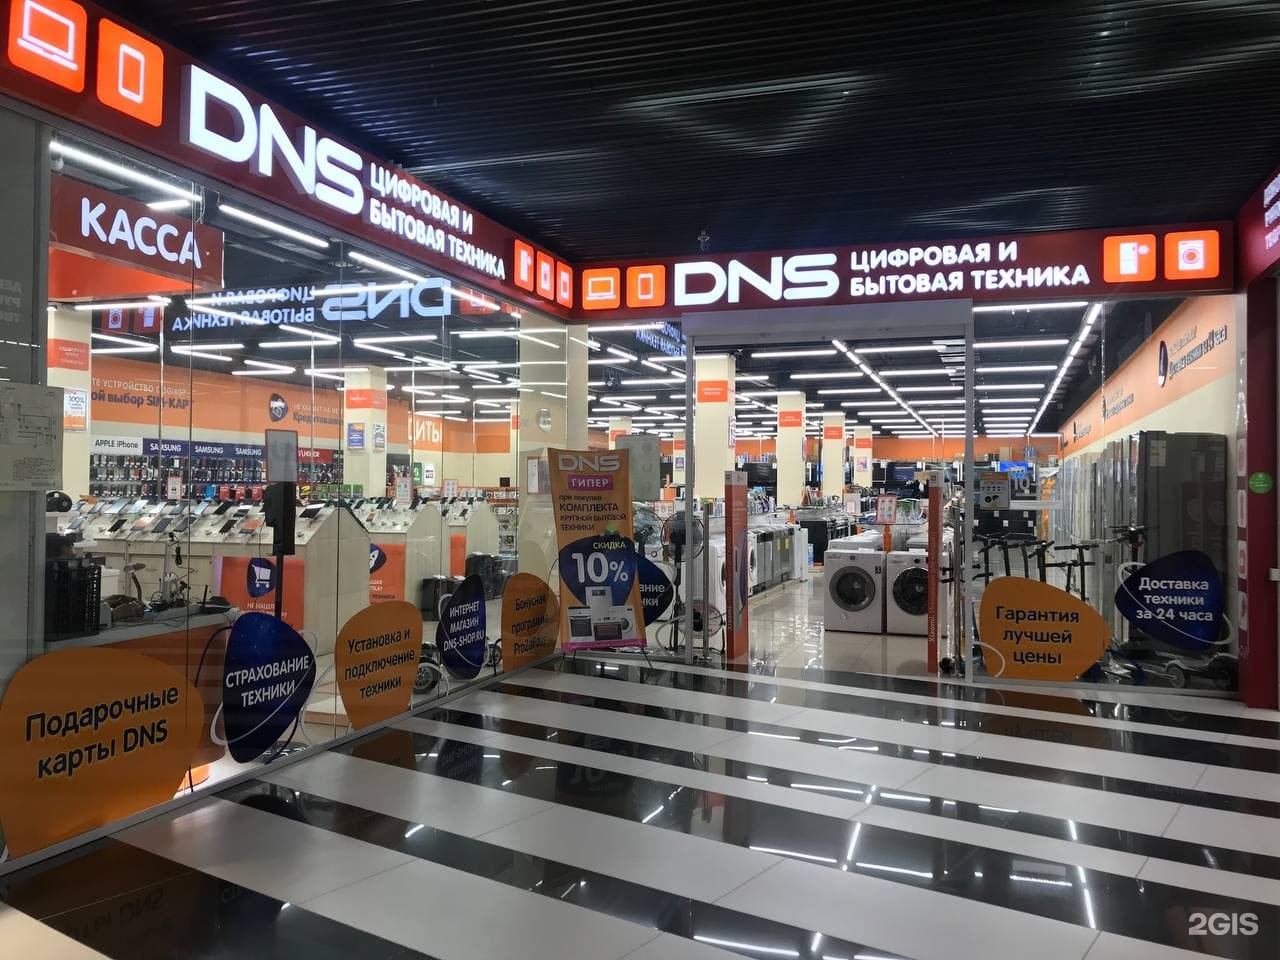 ДНС компьютер центр. Цифровой супермаркет DNS Новосибирск. DNS Computer Center.